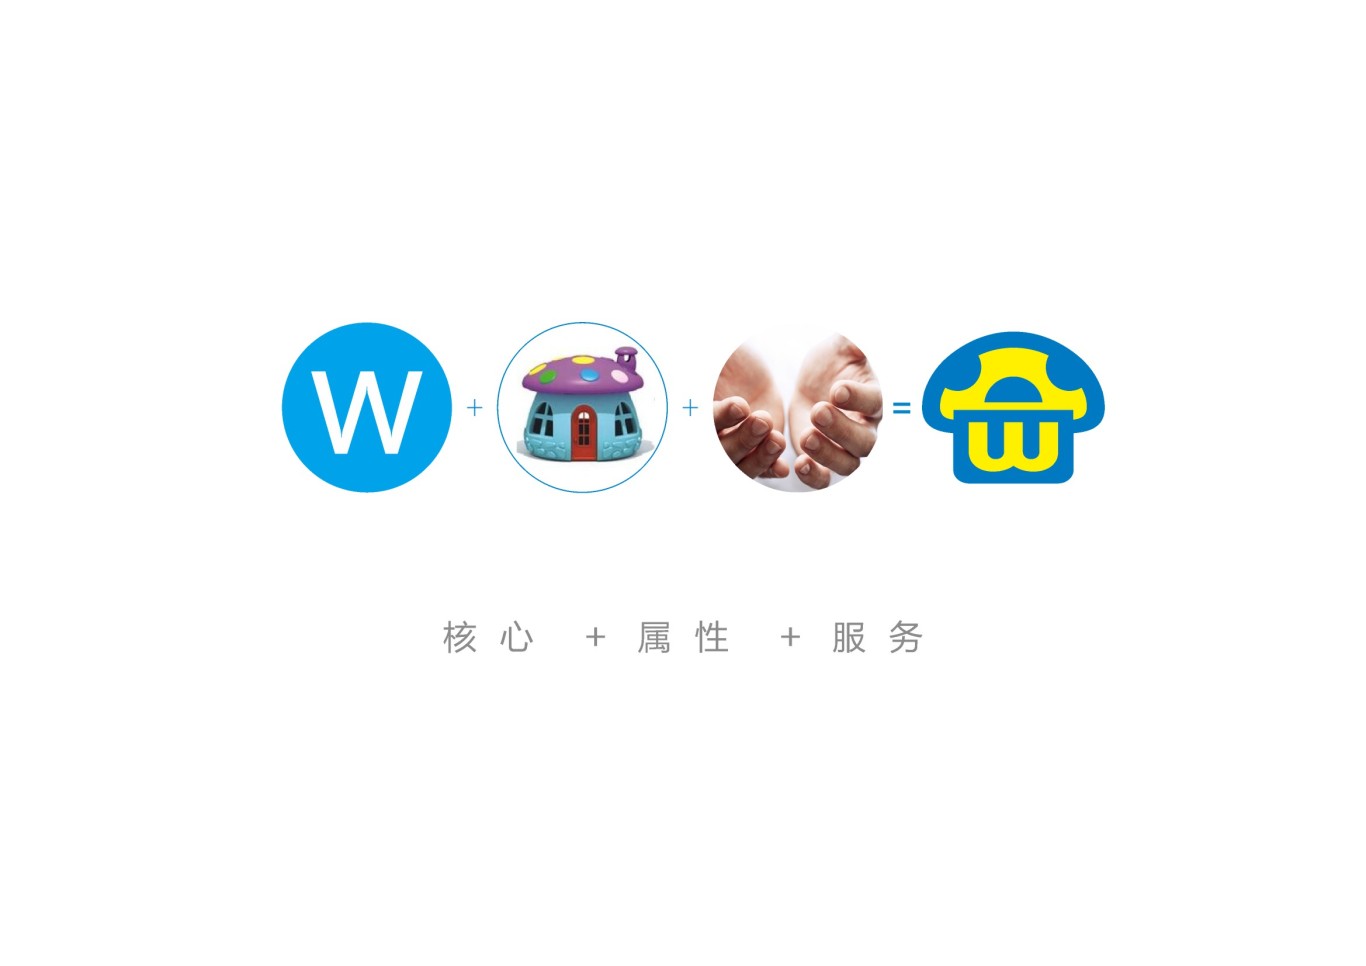 上海窝满连锁便利店品牌形象设计图3